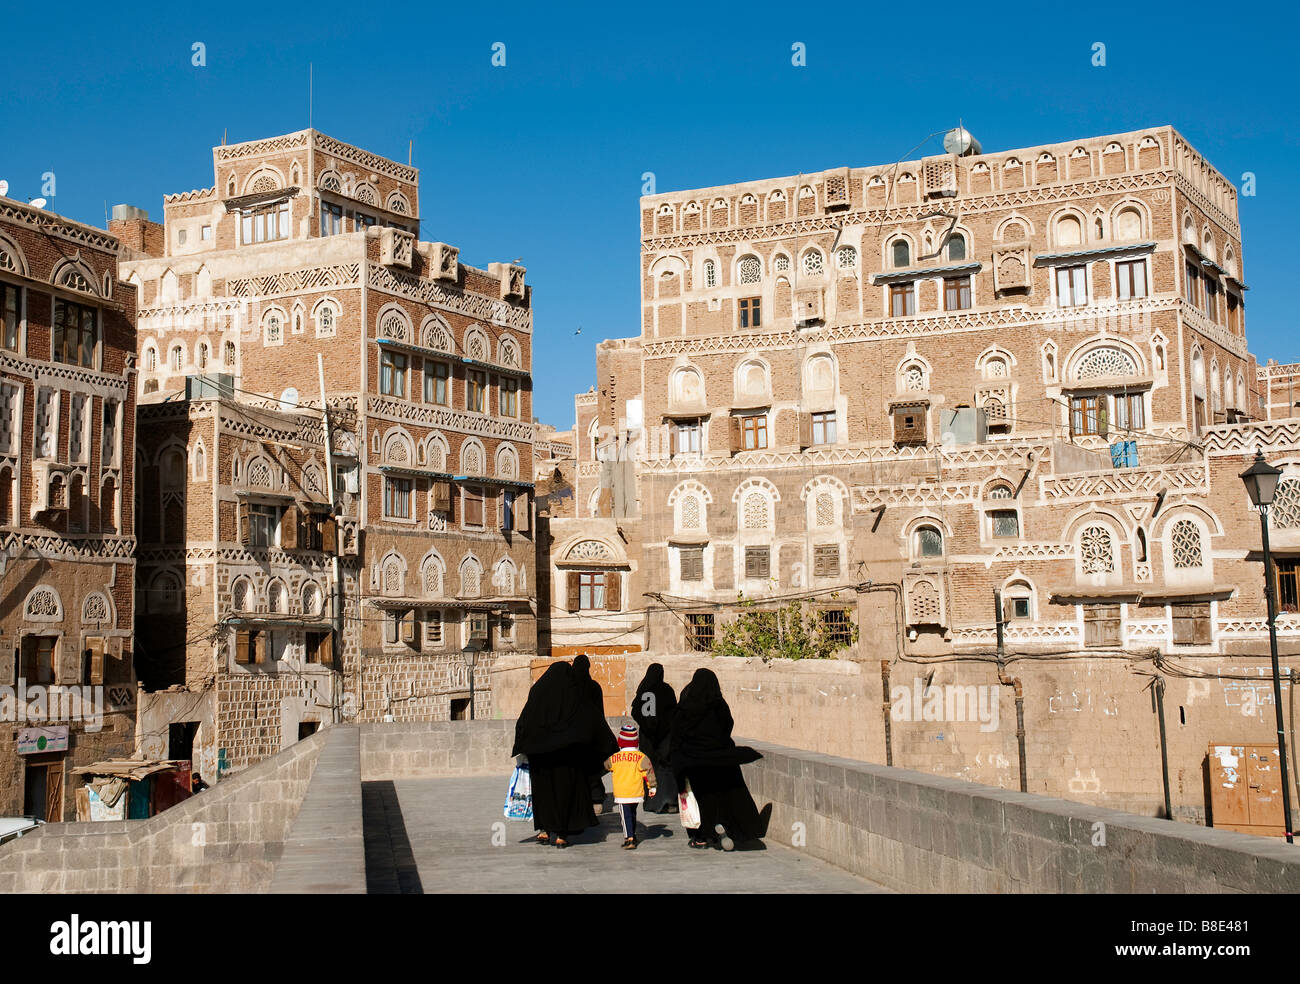 La vieille ville de Sanaa Yémen ville architecture traditionnelle arabe Banque D'Images